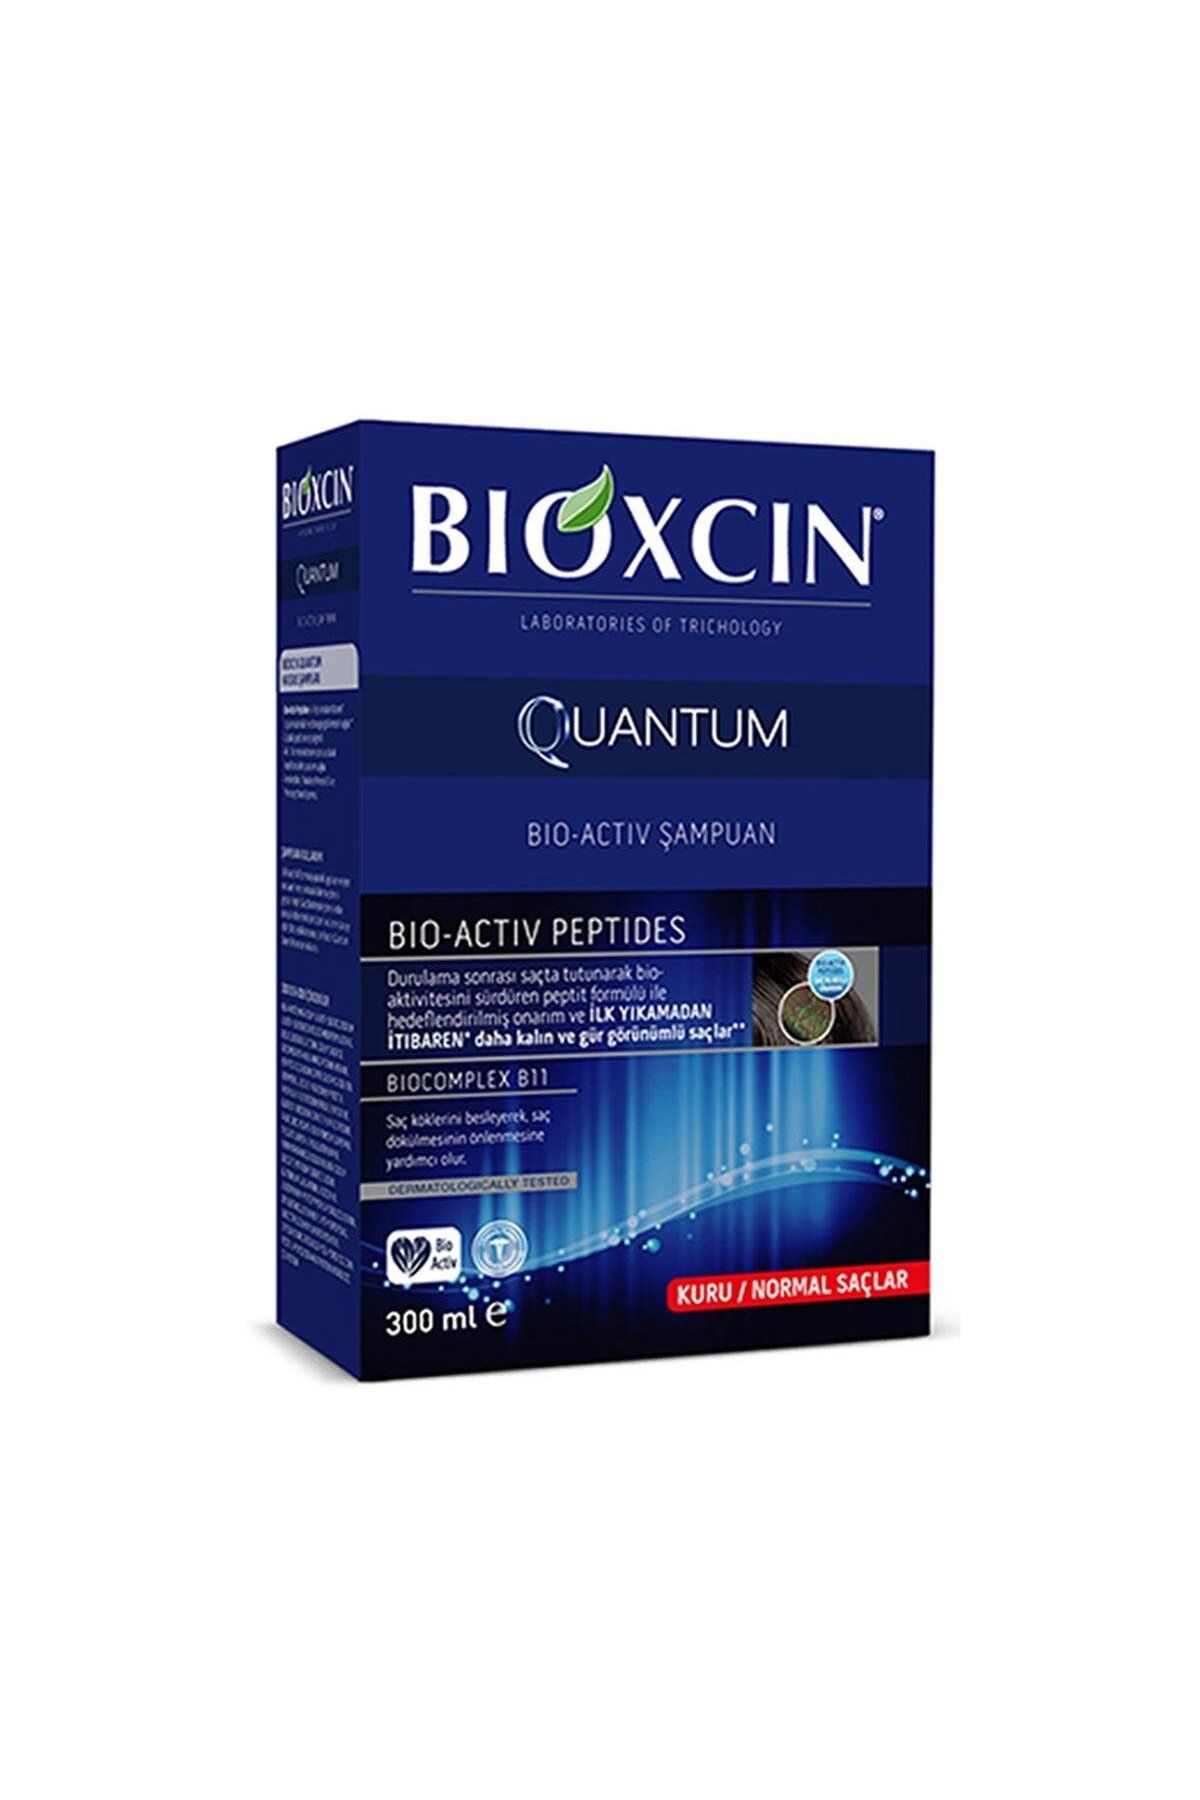 Bioxcin Quantum Şampuan (Kuru-Normal Saçlar İçin) 300 ml Özel Olarak Geliştirilmiş Formül.//